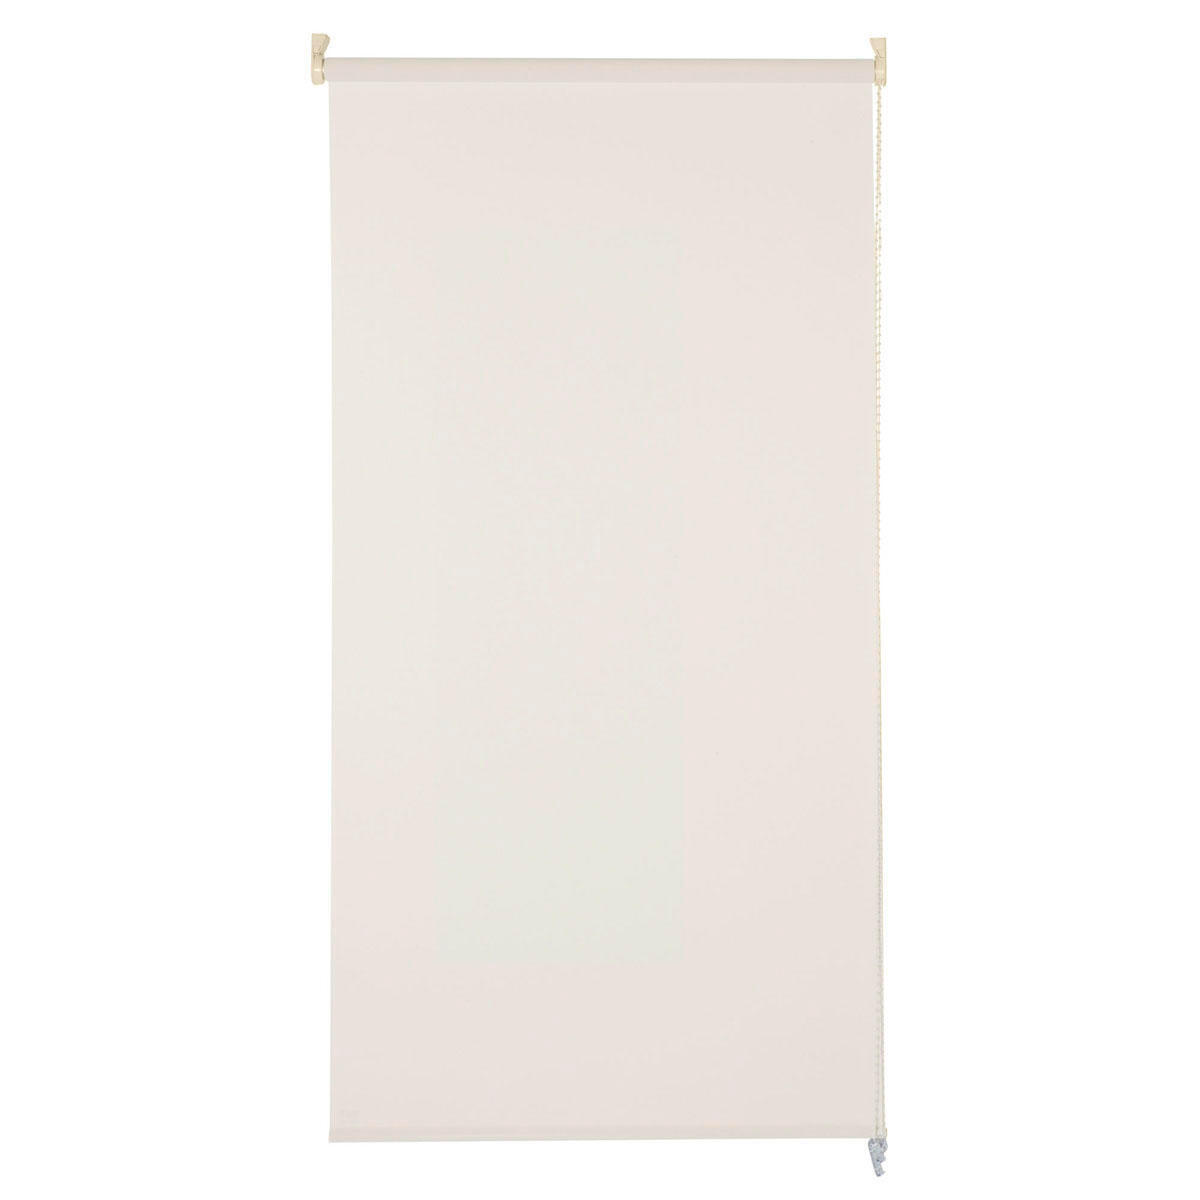 Tenda a rullo filtrante INSPIRE Screen lino 105 x 250 cm - 6